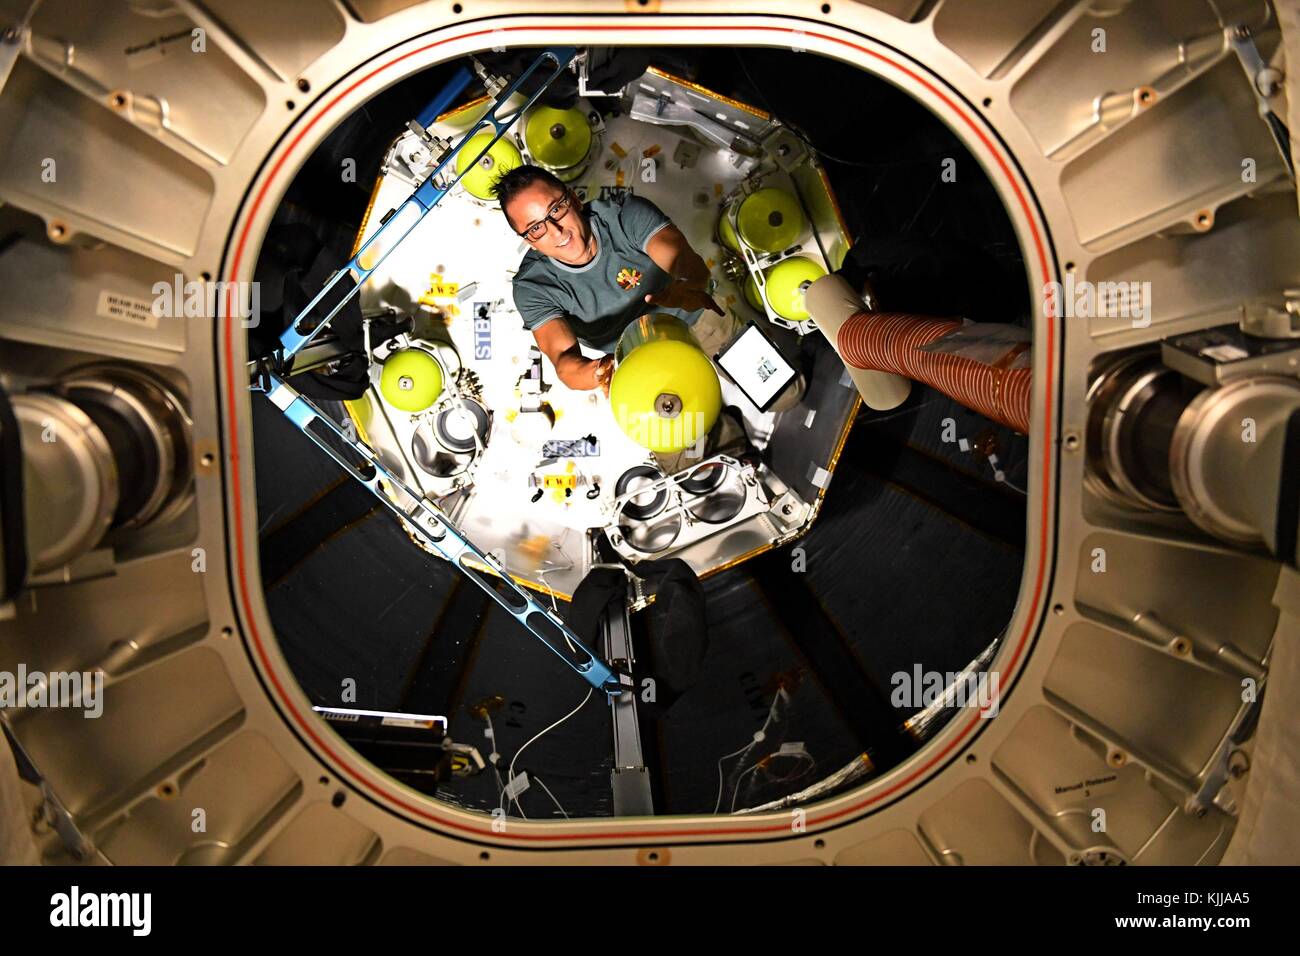 Expedition 53 astronauta americano Joe acaba attrezzature si sposta nel modulo del fascio a bordo della Stazione spaziale internazionale novembre 21, 2017 in orbita intorno alla terra. La bigelow espandibile modulo aerospaziale è sperimentale e modulo espandibile subendo una due-anno al test attaccato alla stazione spaziale internazionale. Foto Stock